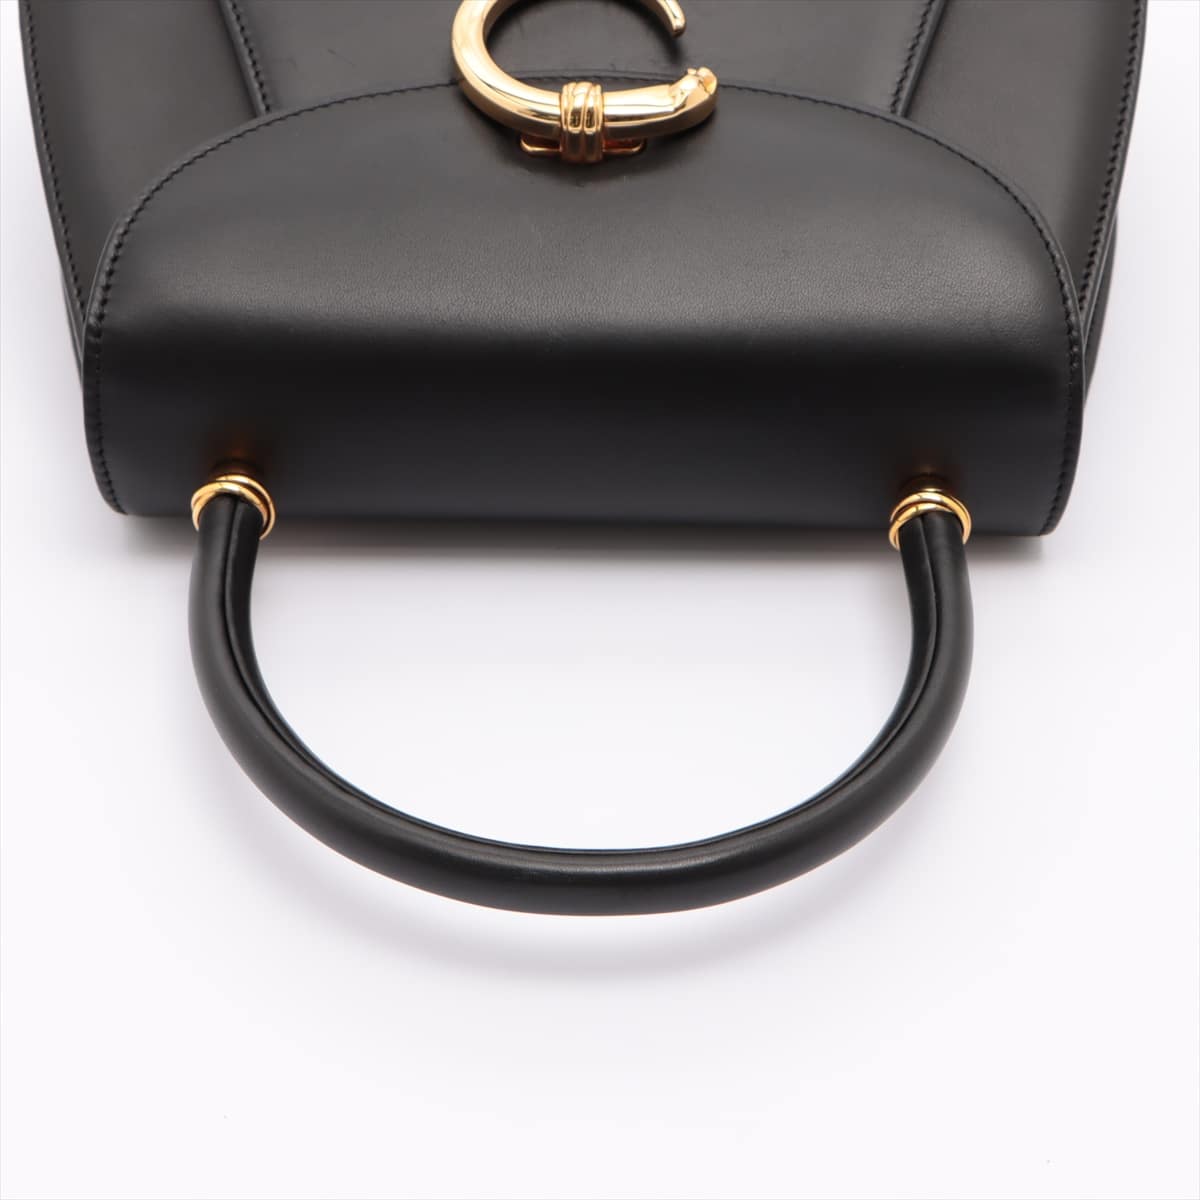 Cartier Panthère Leather Hand bag Black